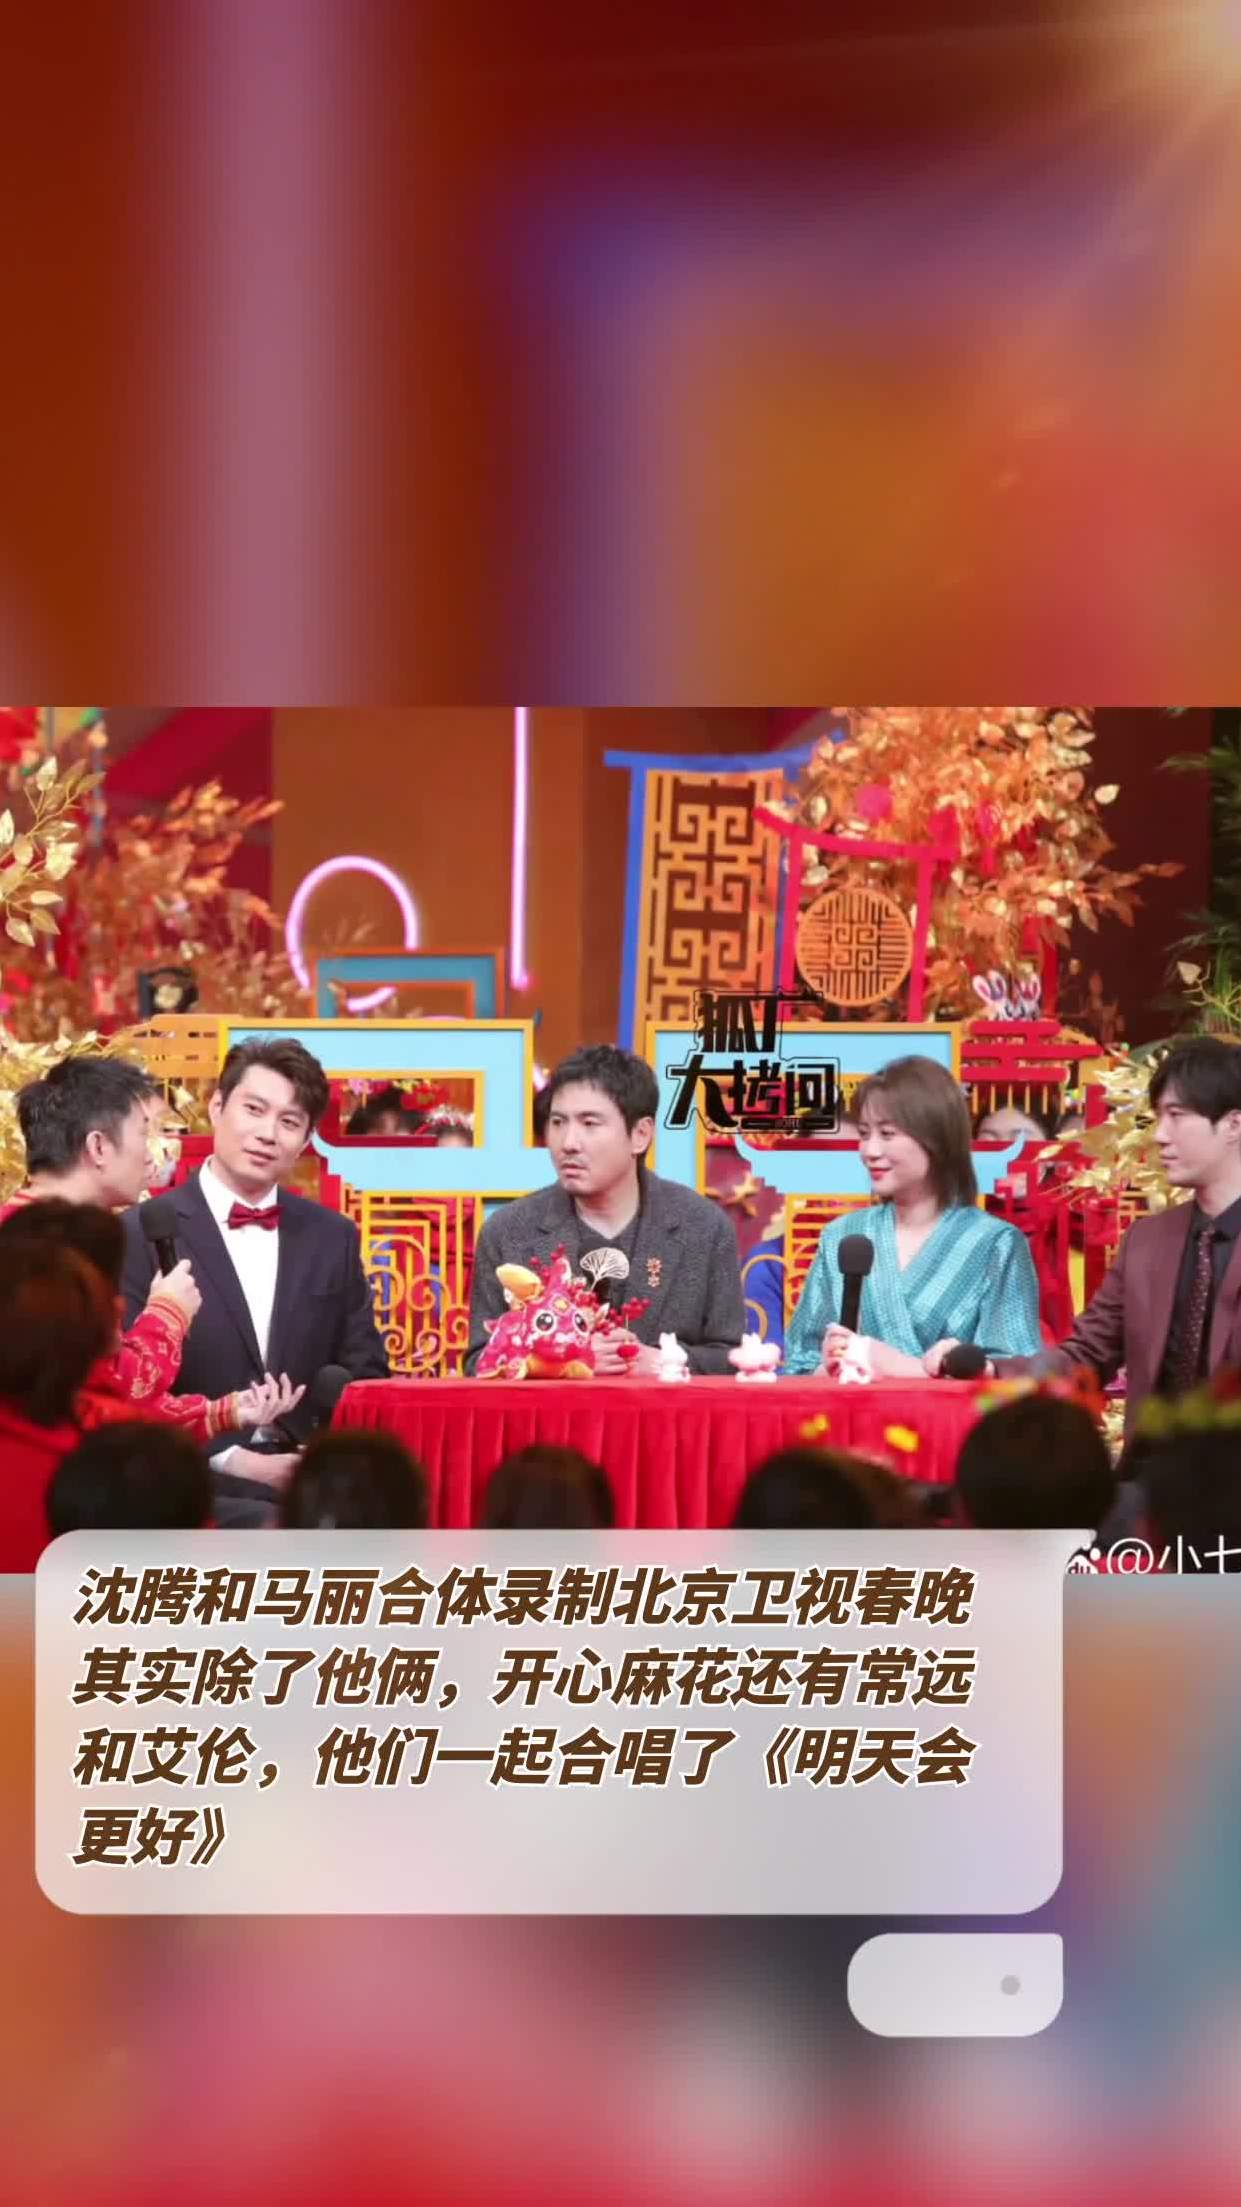 沈腾和马丽合体录制北京卫视春晚,其实除了他俩,开心麻花还有常远和